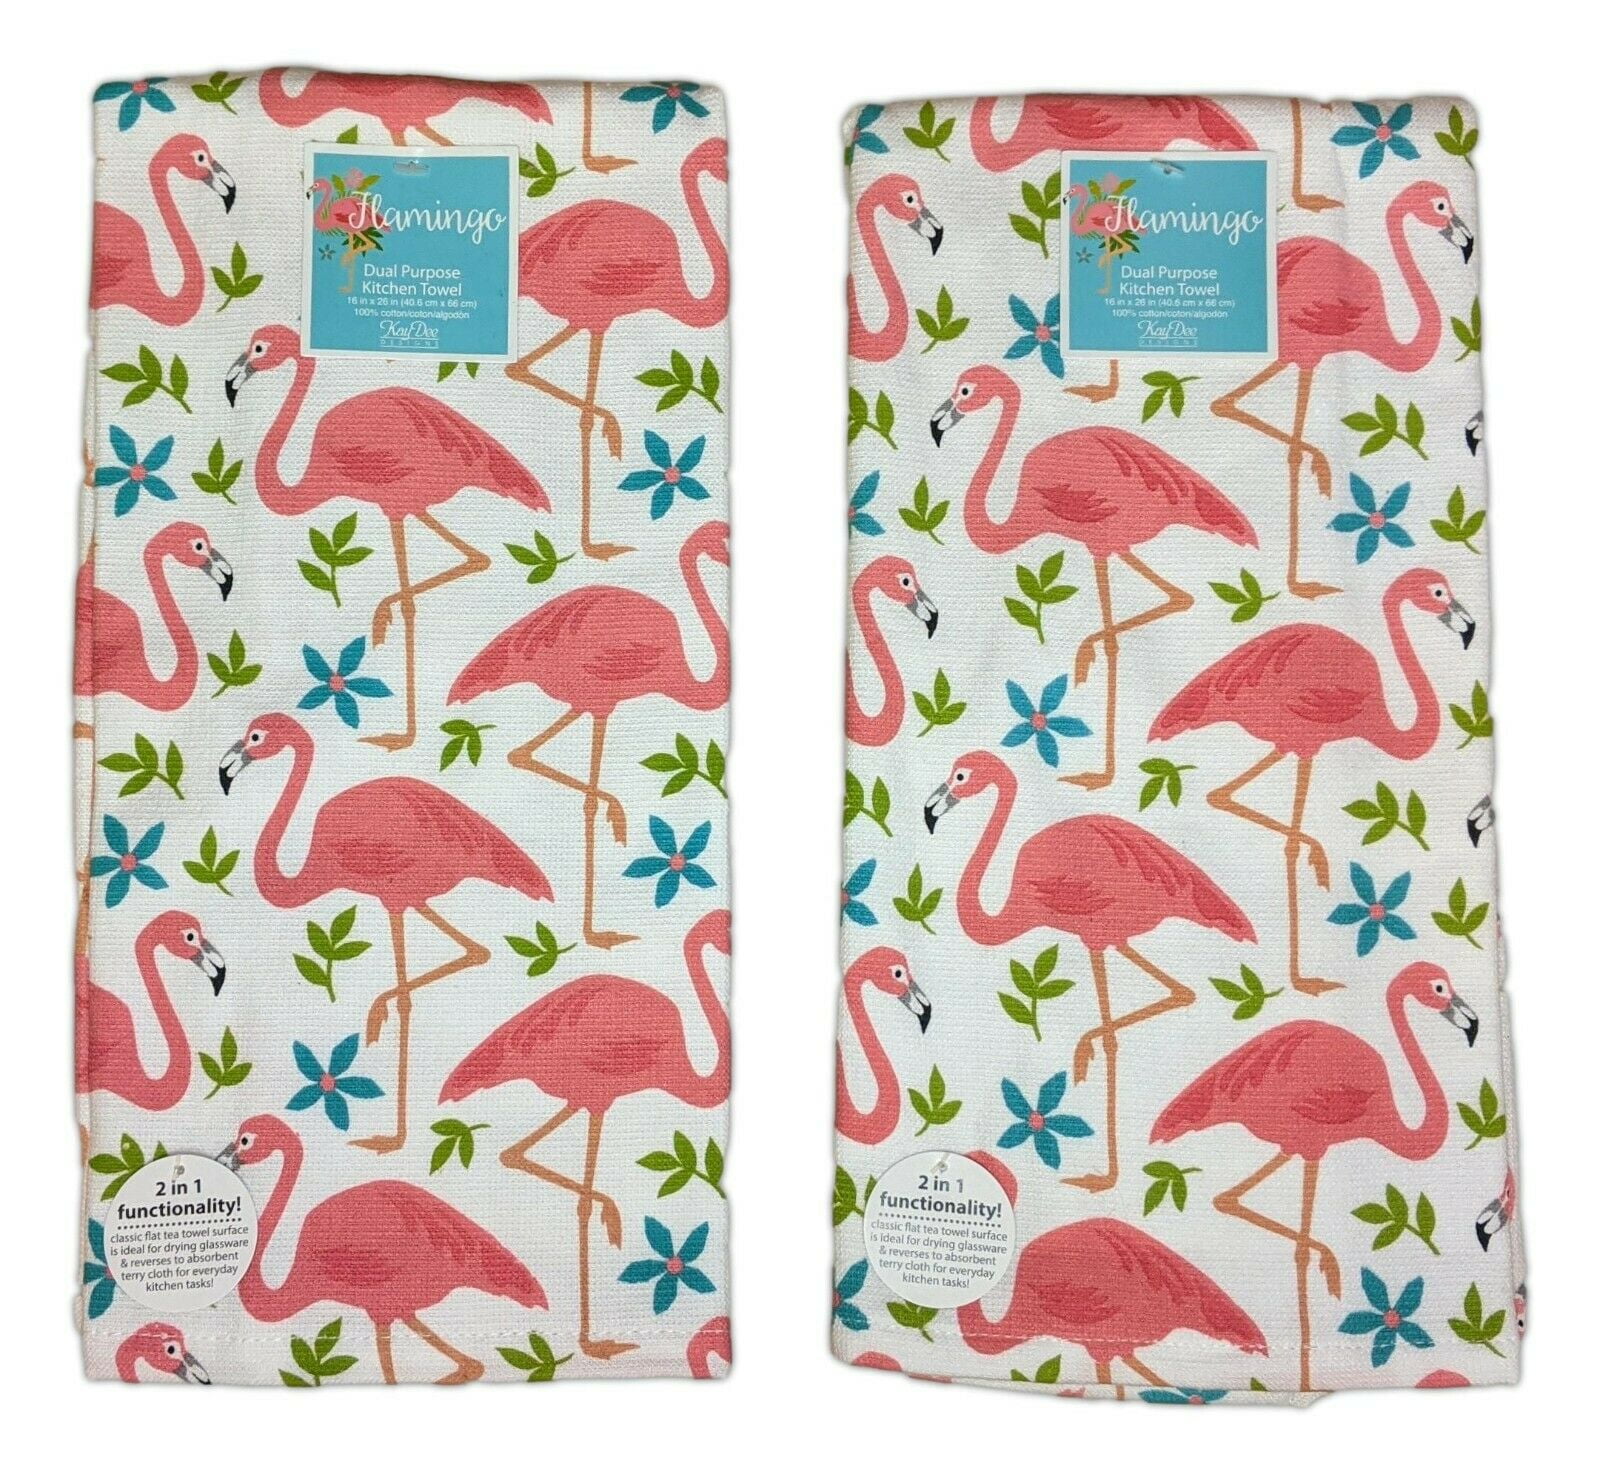 Flamingo Kitchen Apron Retro Adult Cotton Tropical Bird Simply Whimsical 